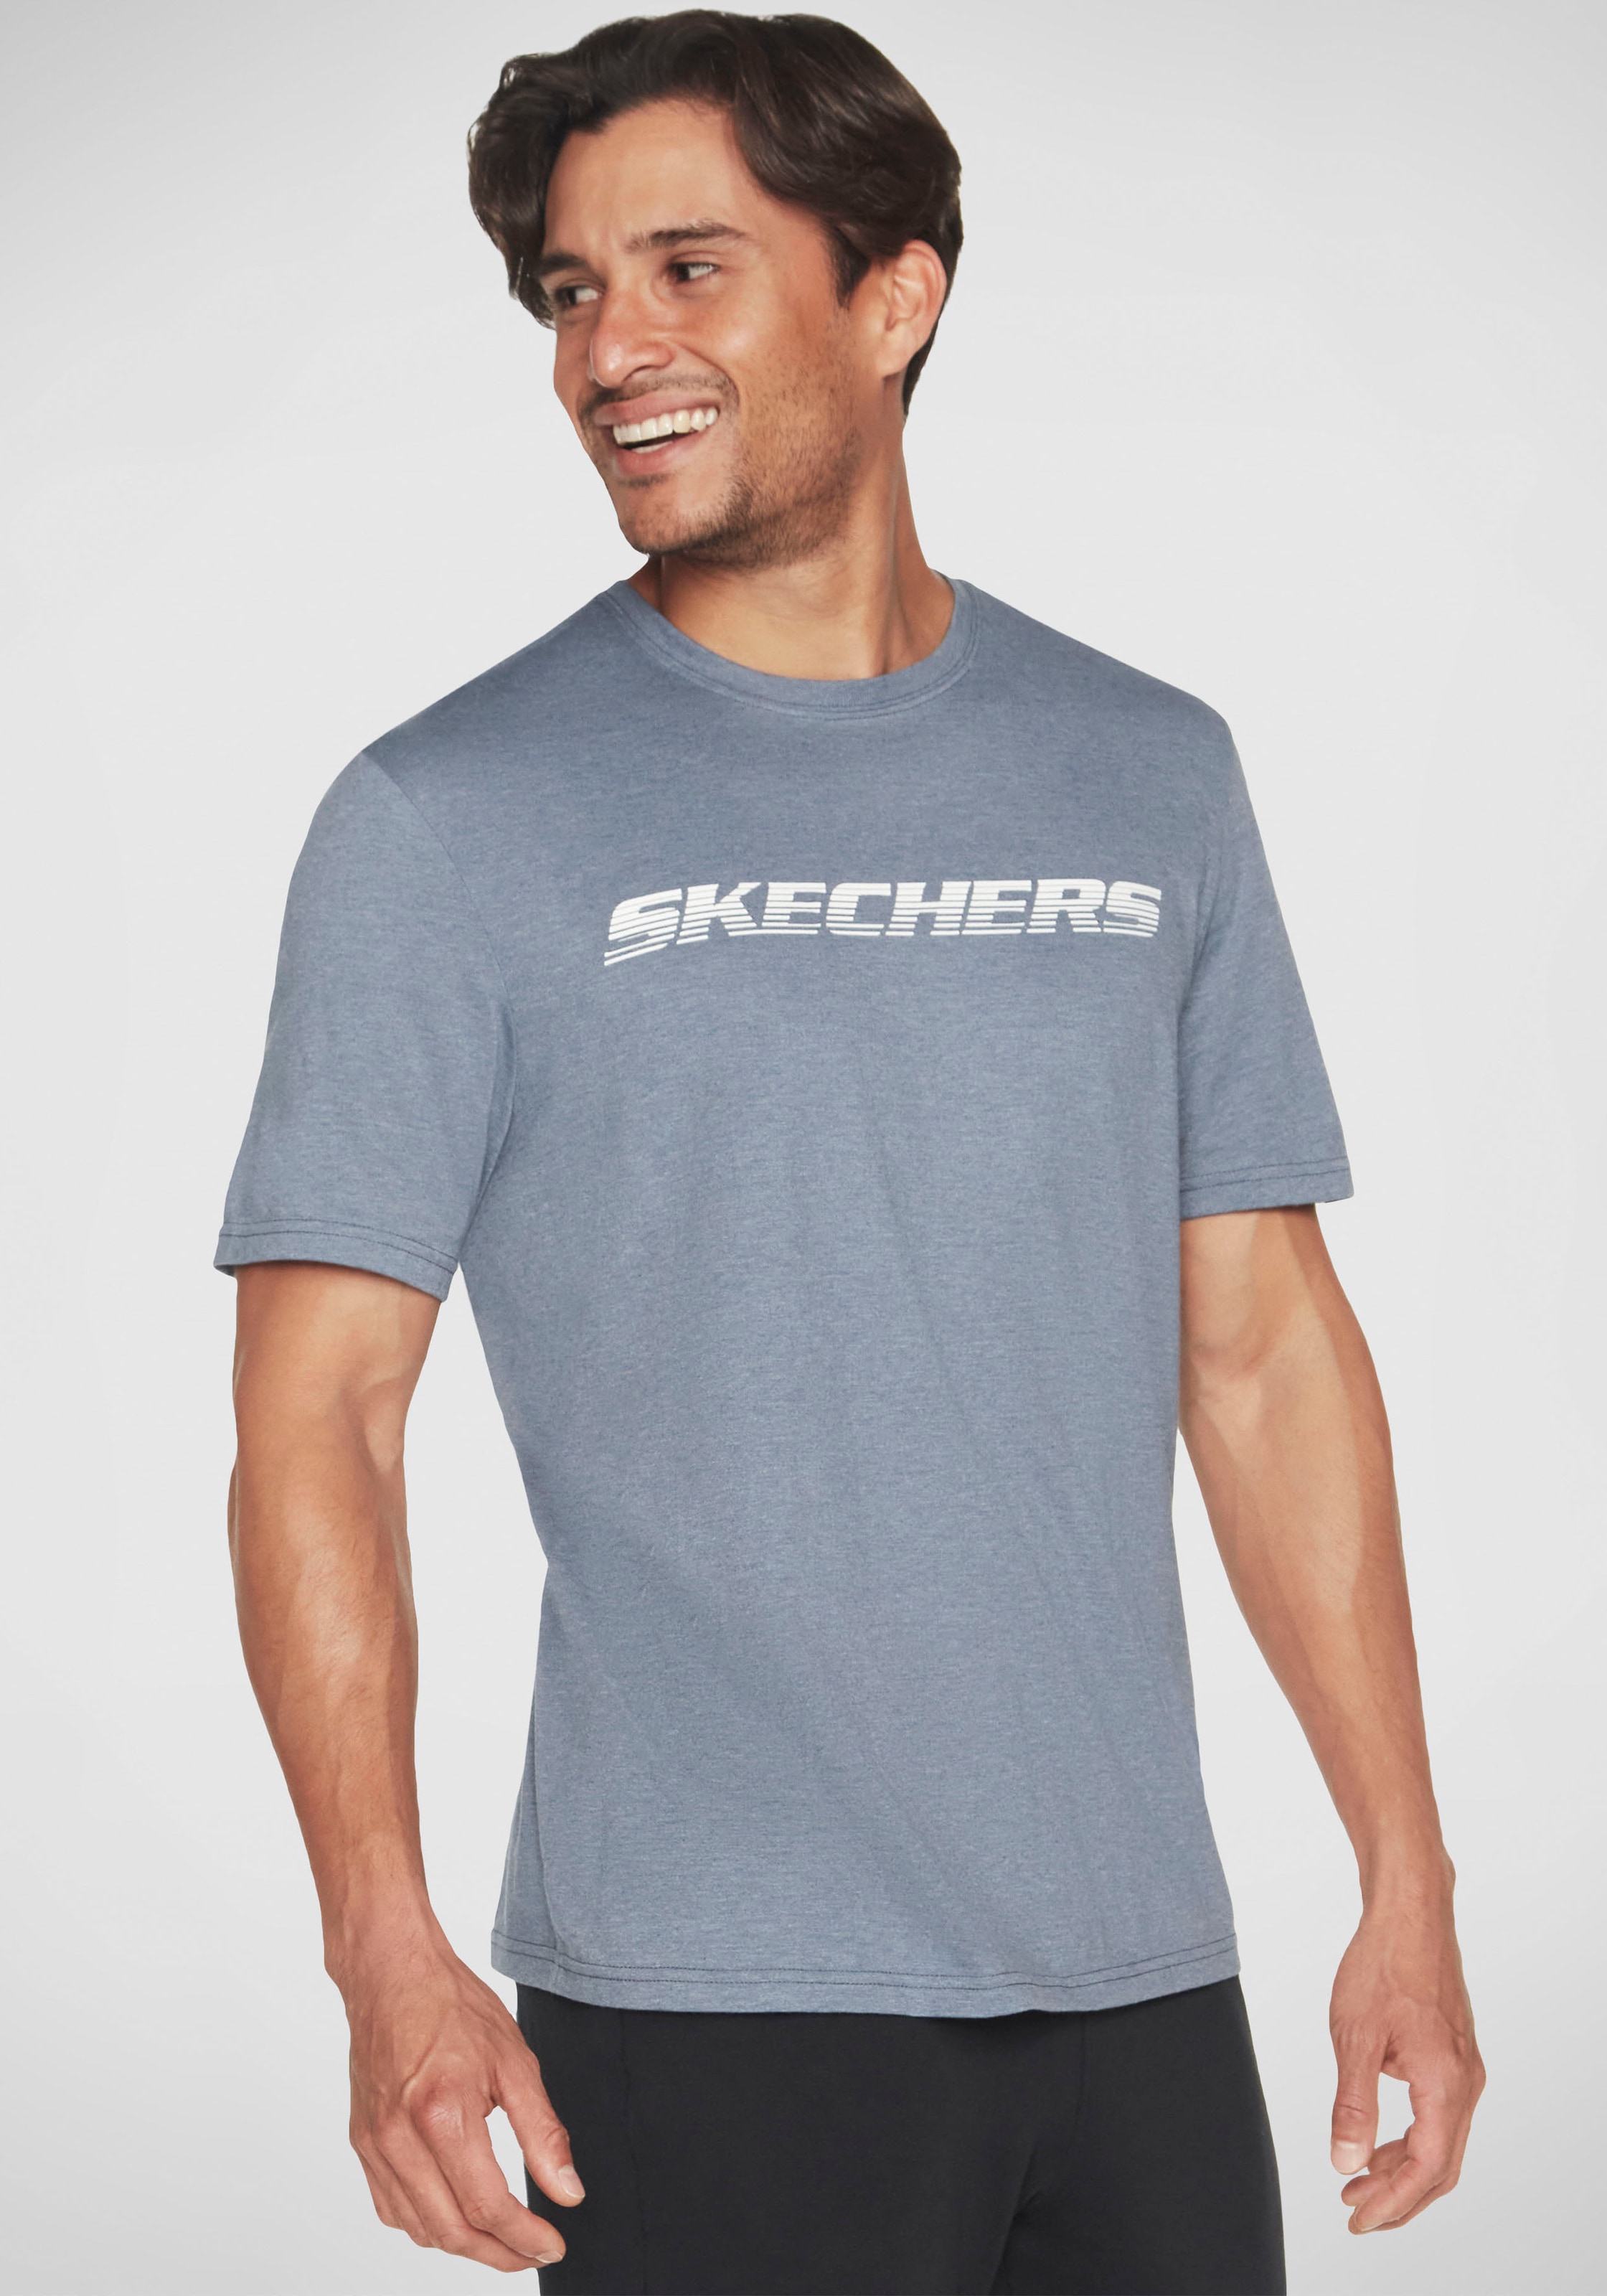 Skechers T-Shirt TEE« »MOTION bei